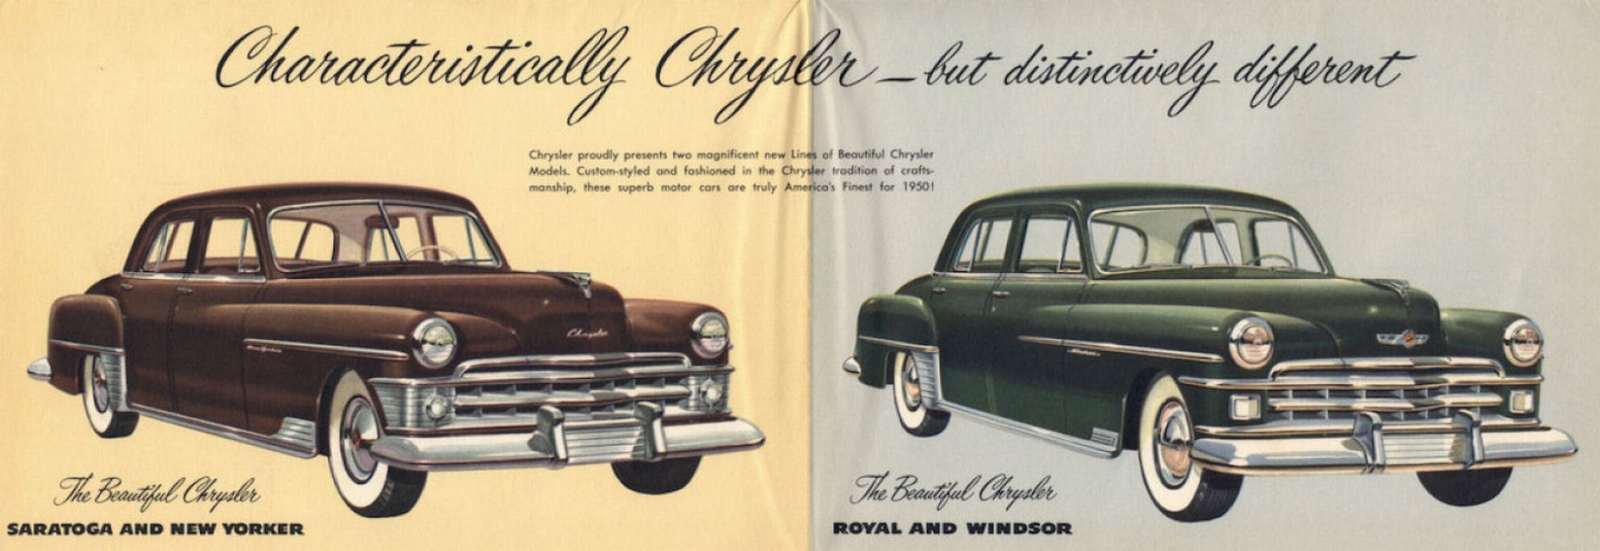 n_1950 Chrysler Full Line Foldout-02.jpg